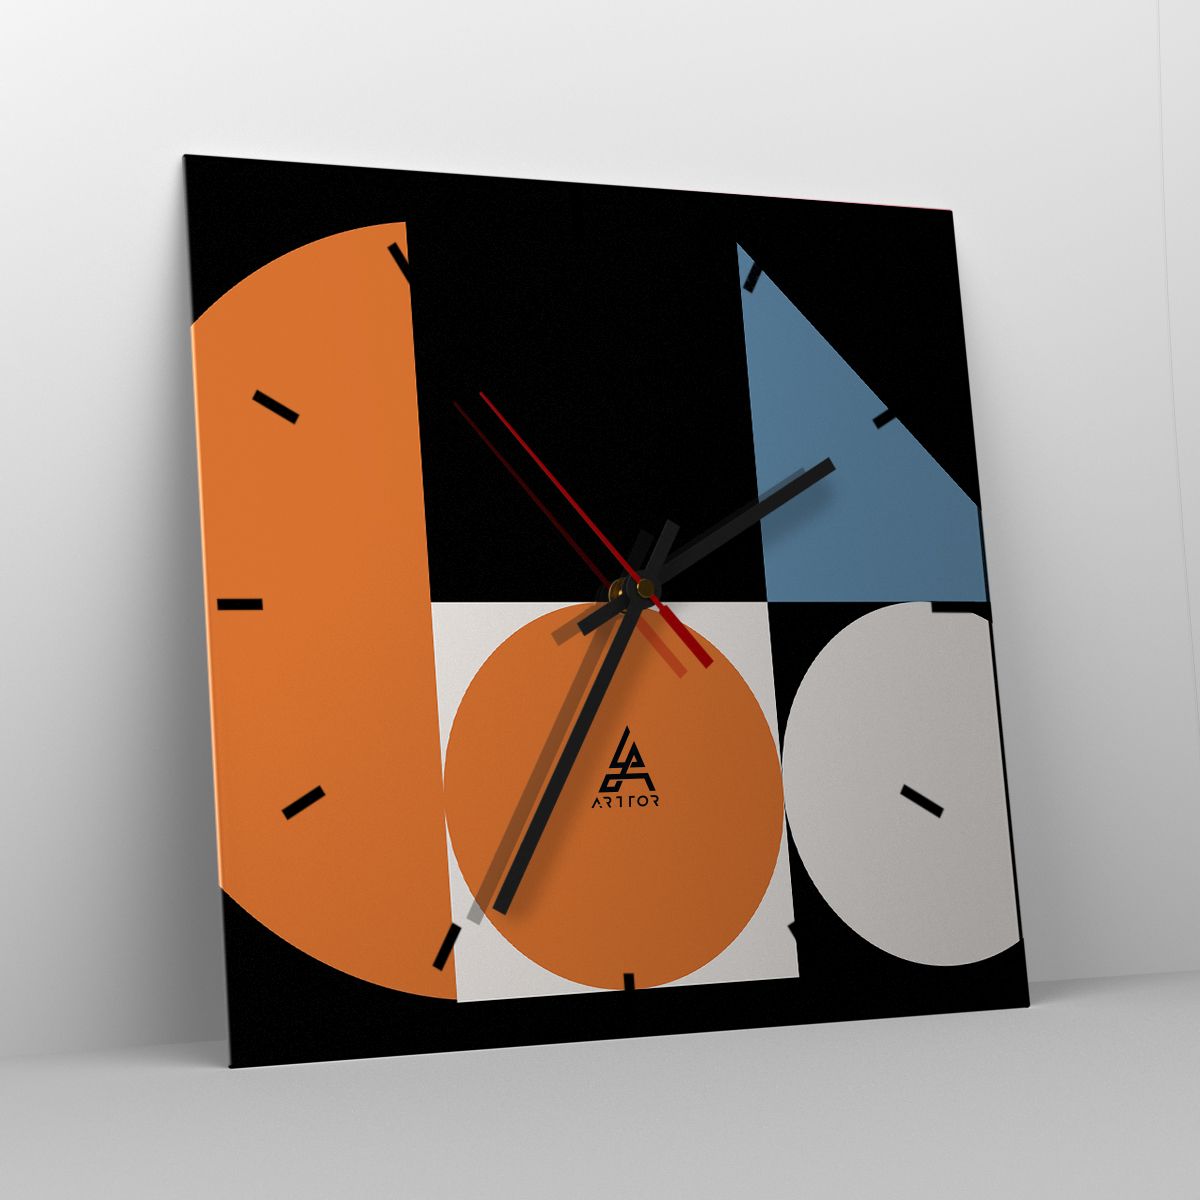 Orologio da parete Arttor - Composizione di figure - Quadrante con trattini,  Forma: Quadrato - 40x40 cm - Astrazione, Grafica, Motivo Geometrico